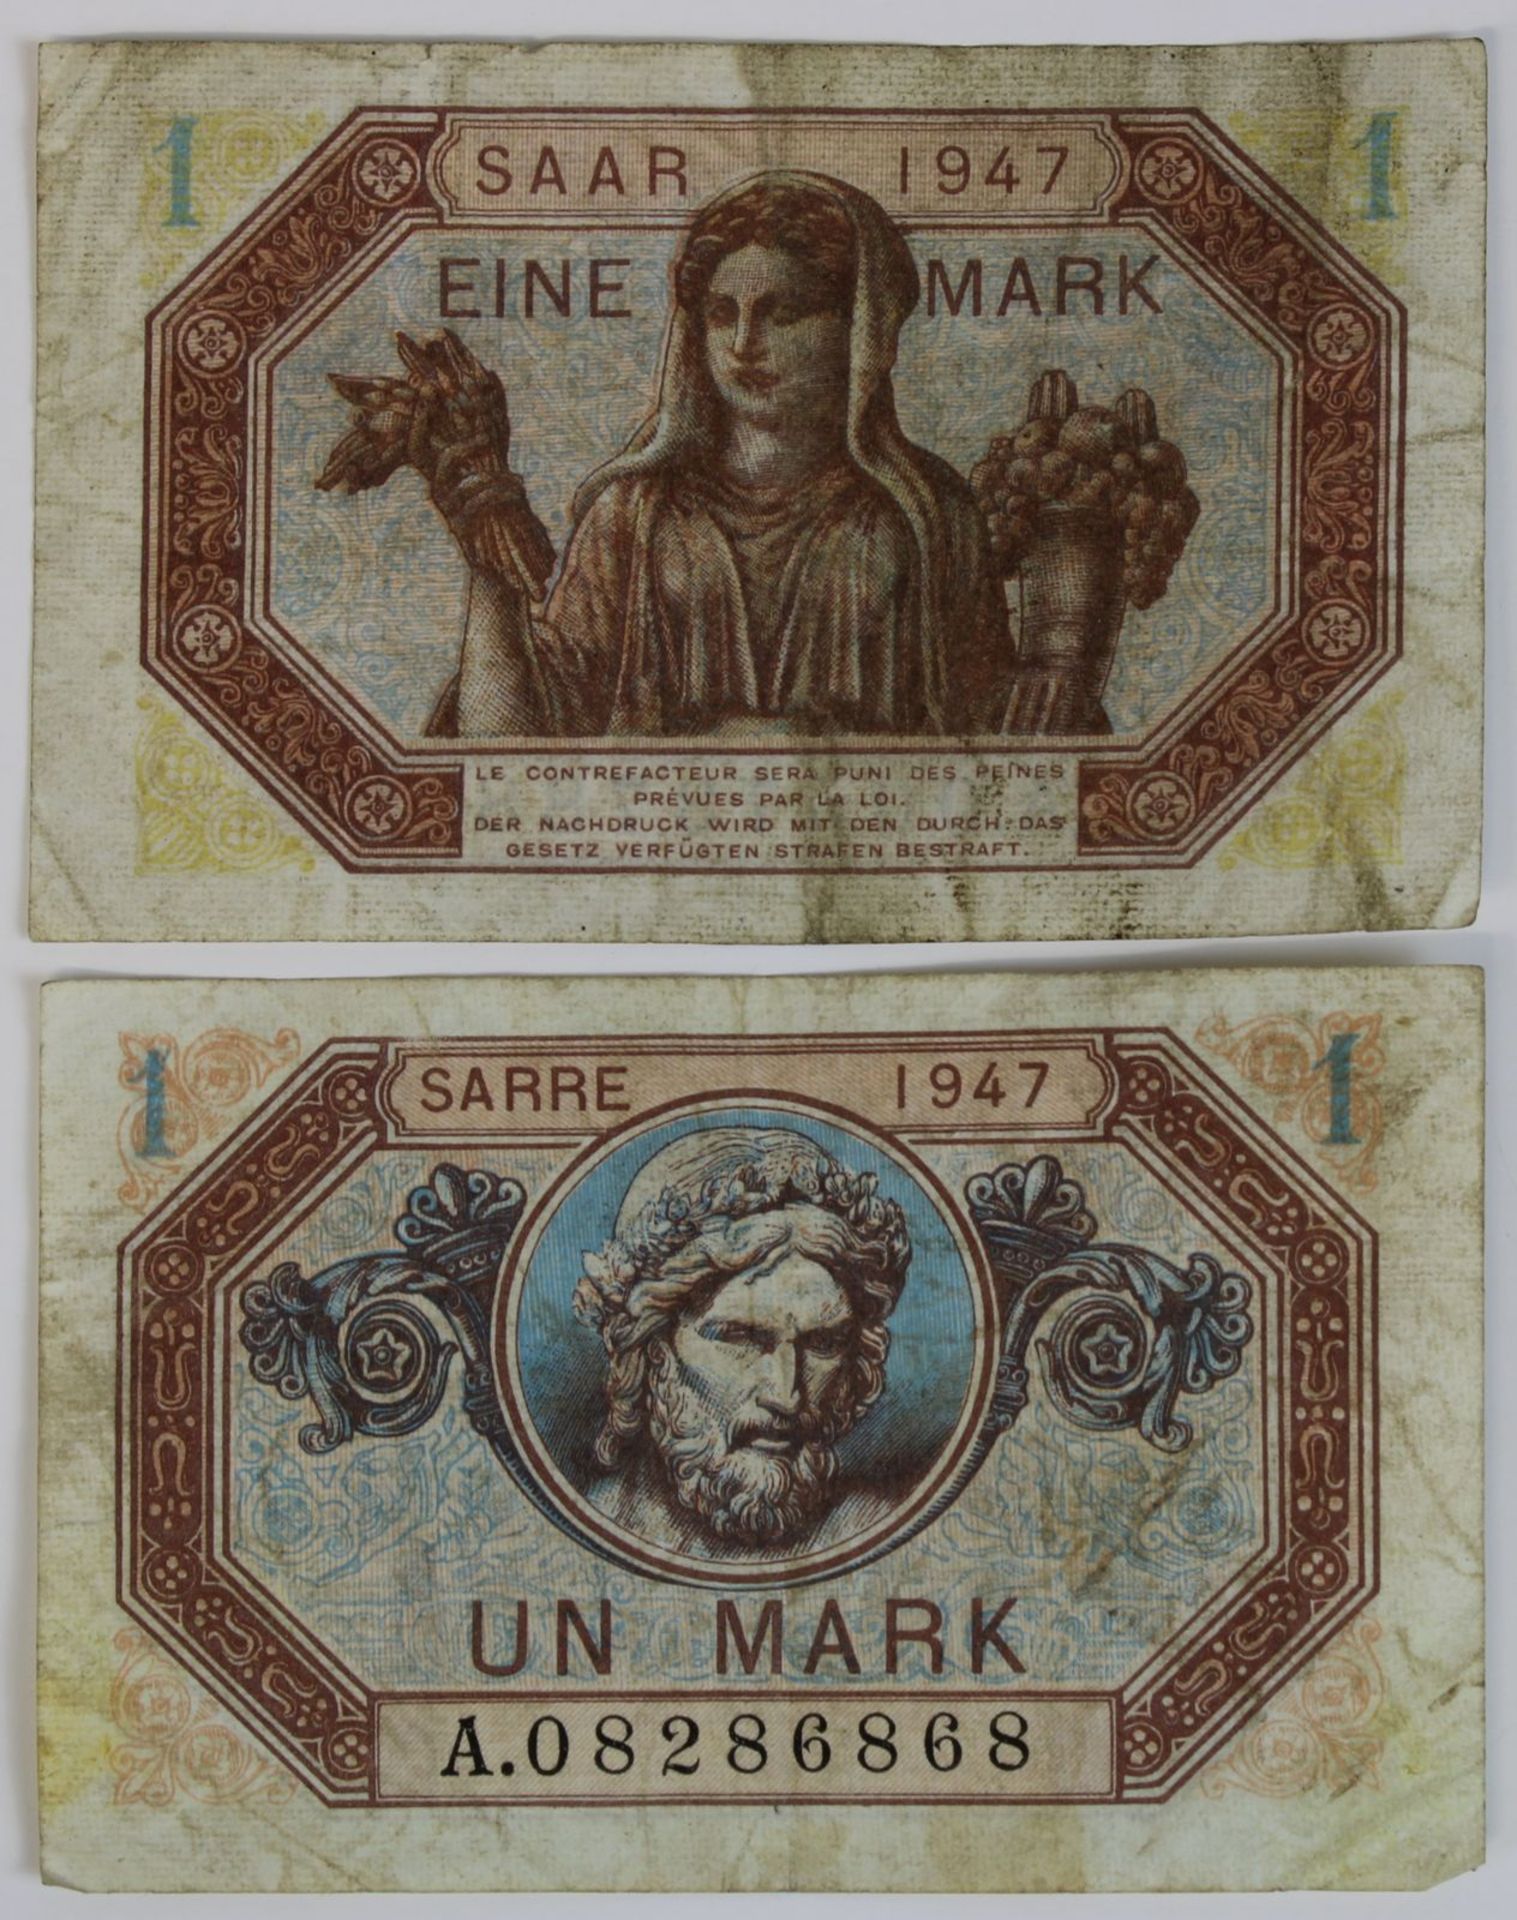 Zwei Banknoten zu einer Mark, Saar 1947, Vorderseite mit französischer Beschriftung, Rückseite mit - Bild 2 aus 2